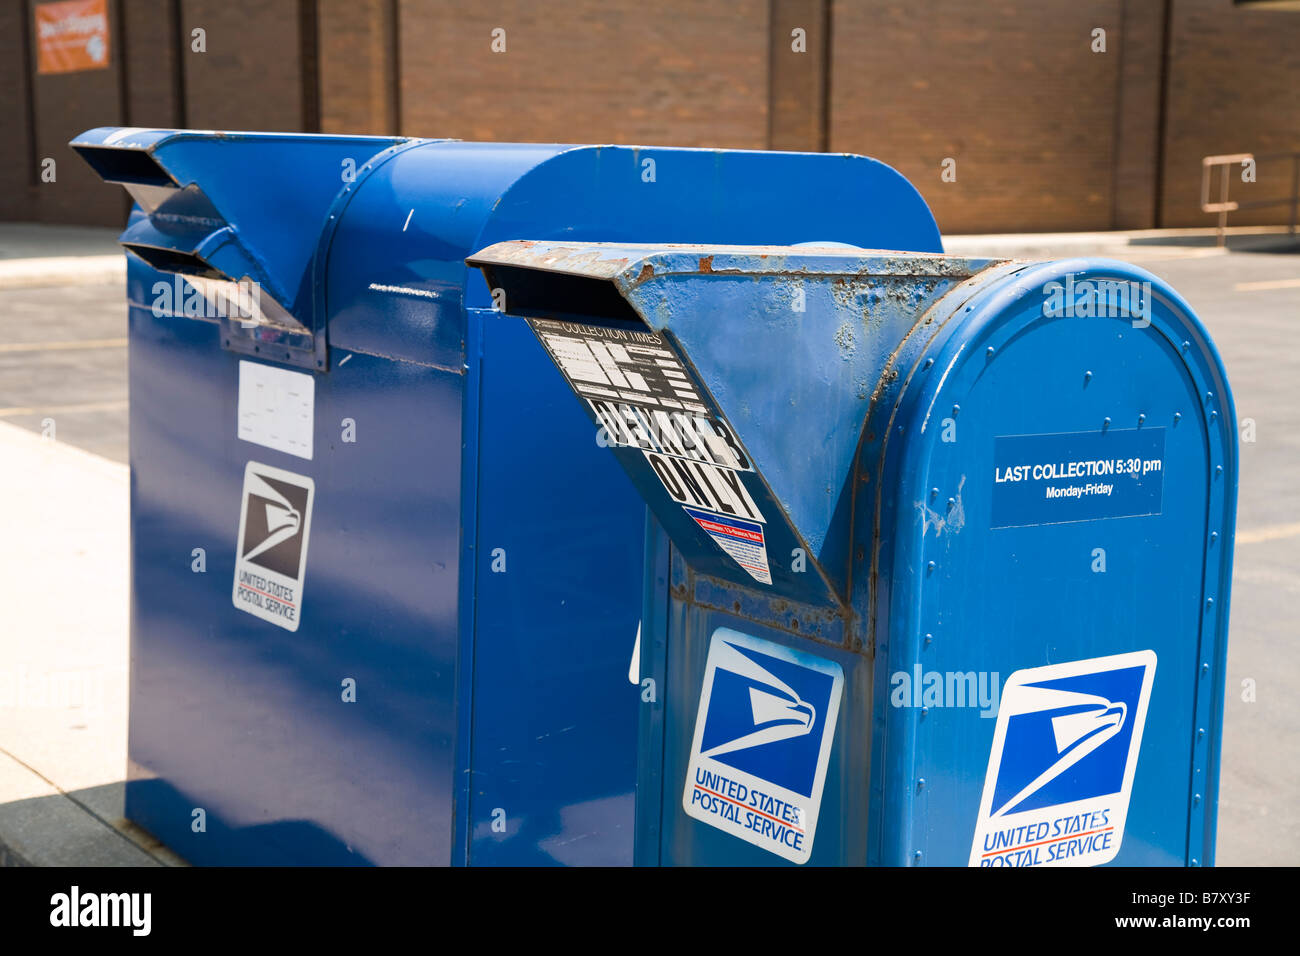 ILLINOIS DeKalb United States Post Office caselle blu presso un ufficio postale con posta elettronica gli orari di prelevamento e di servizi Foto Stock